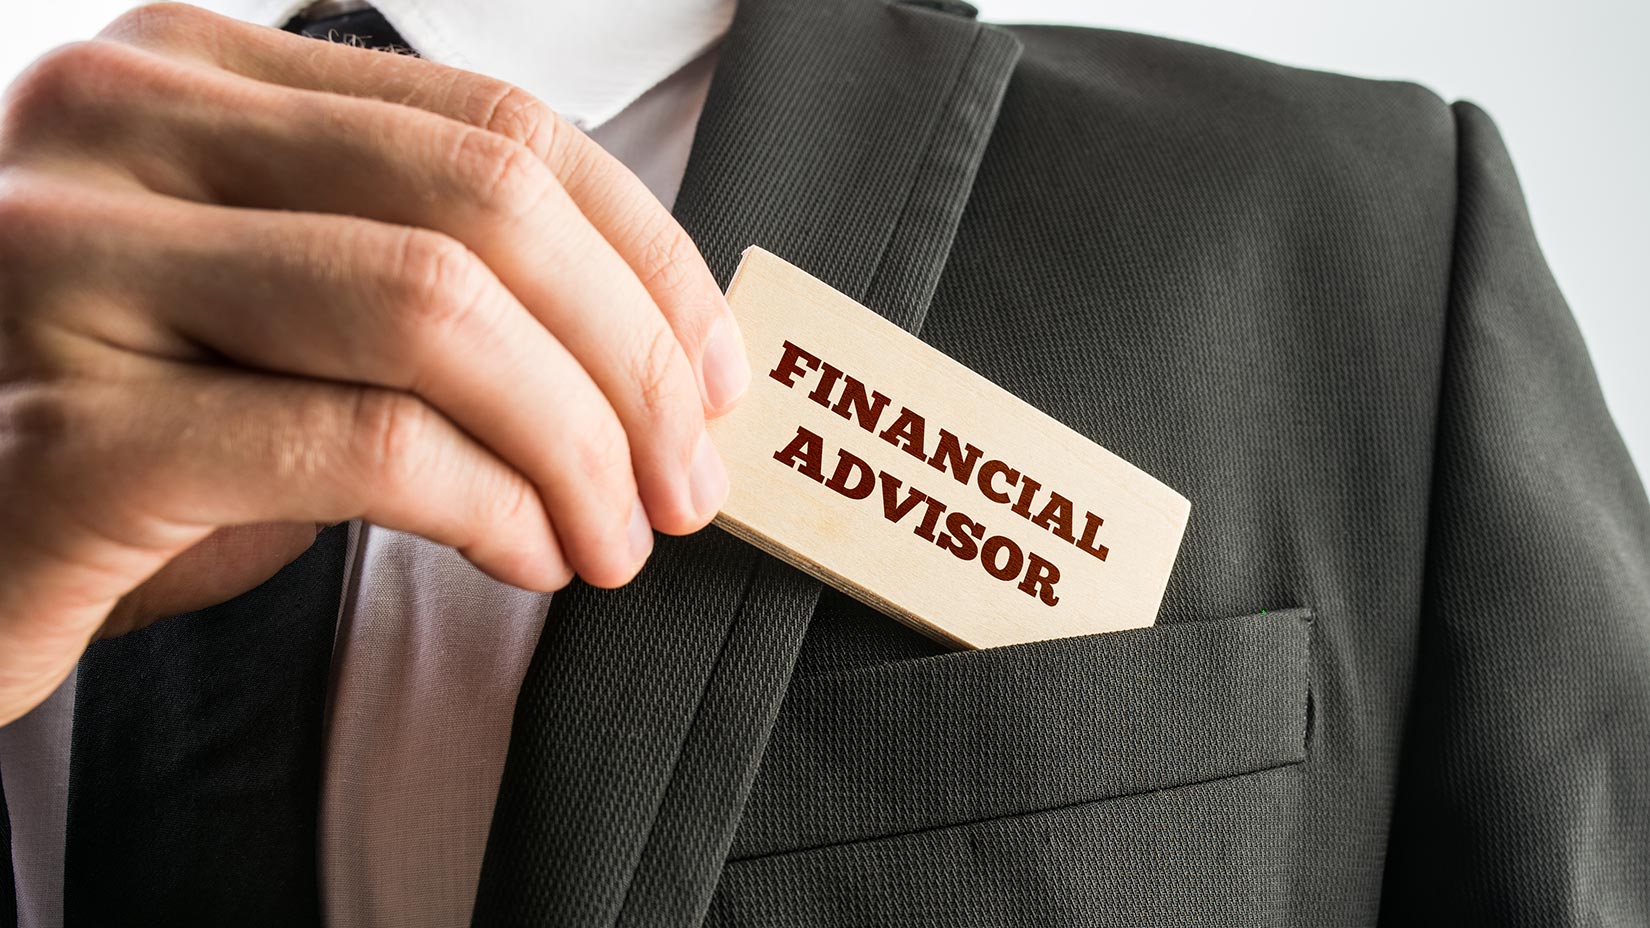 Finance Adviser